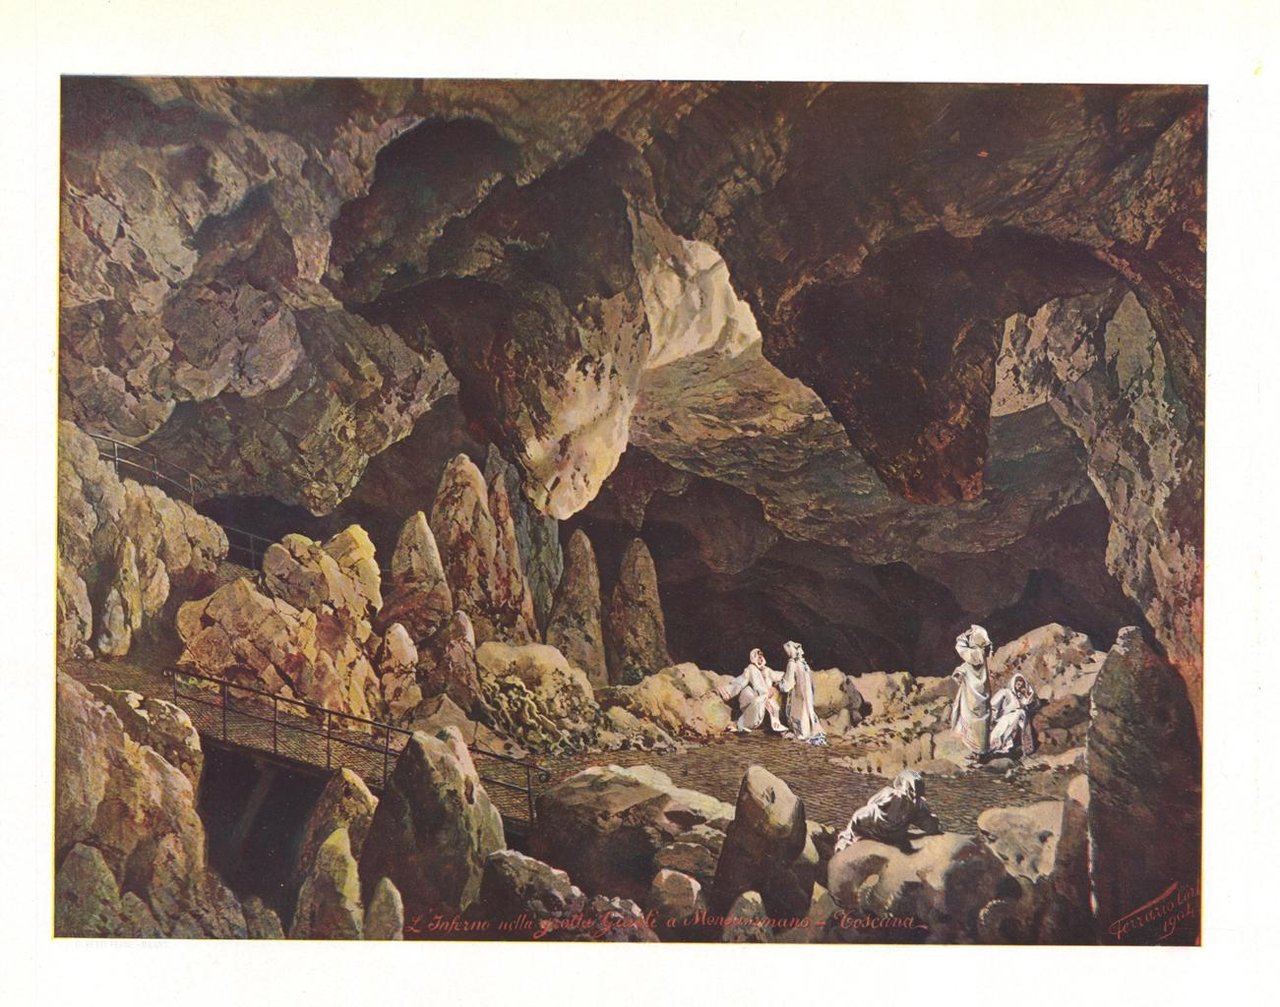 L'Inferno nella grotta Giusti a Monsummano - Toscana